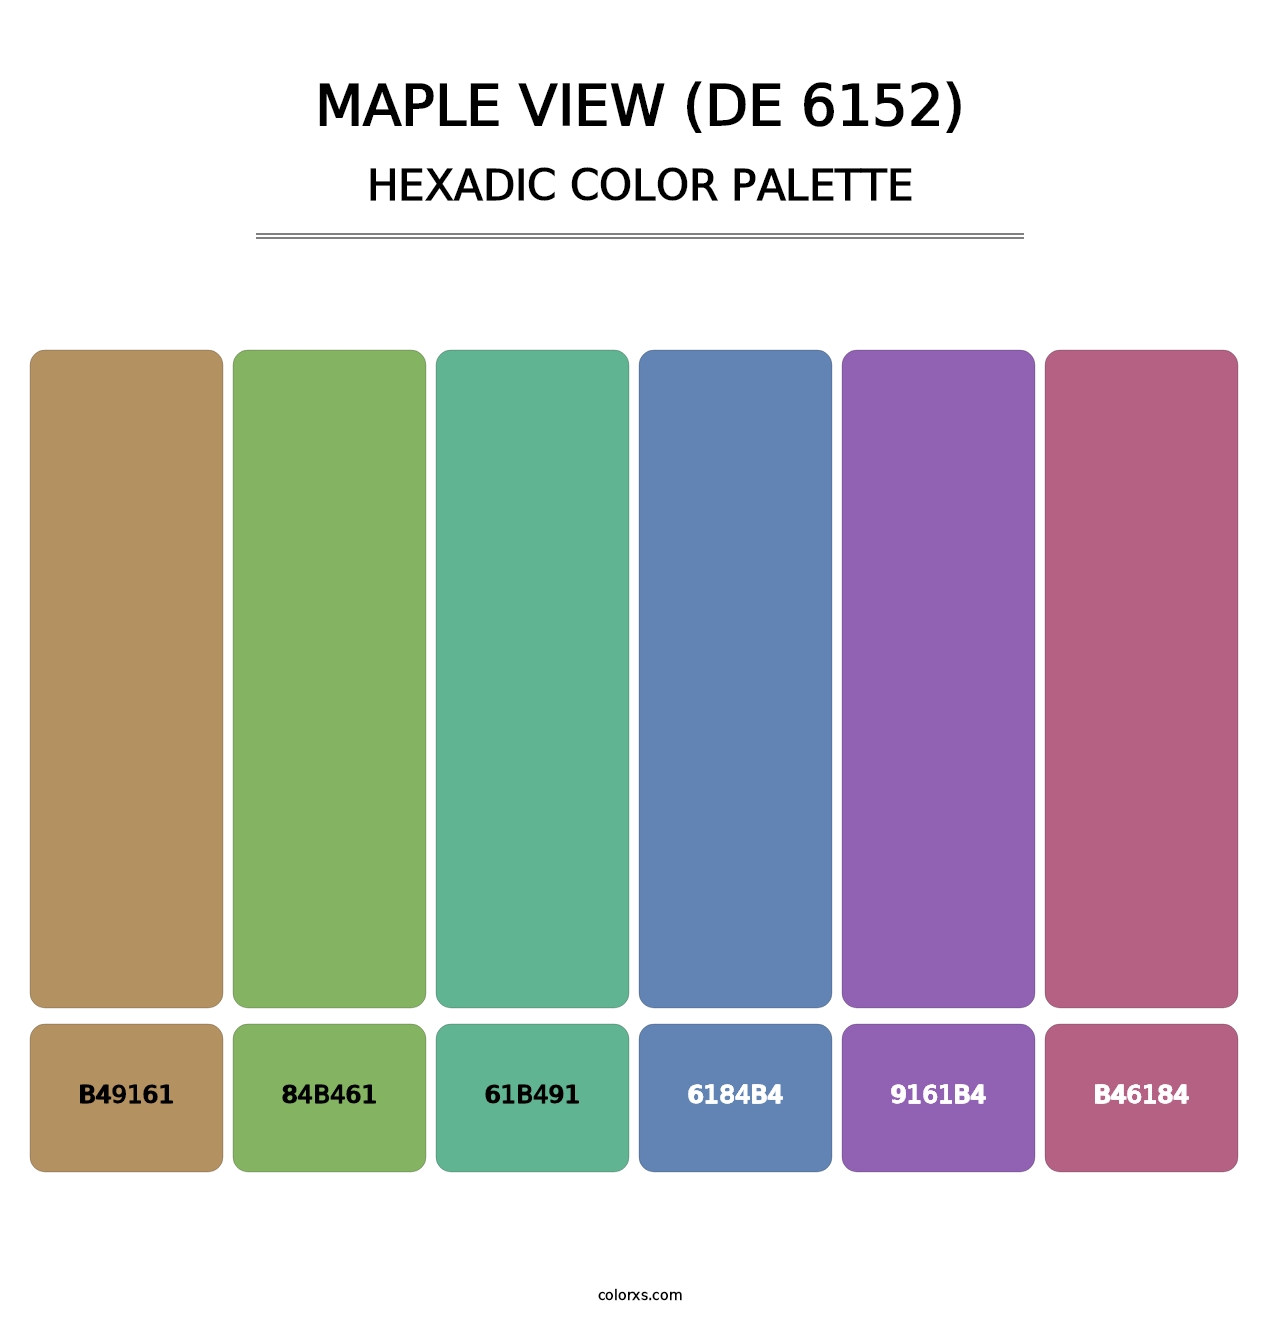 Maple View (DE 6152) - Hexadic Color Palette